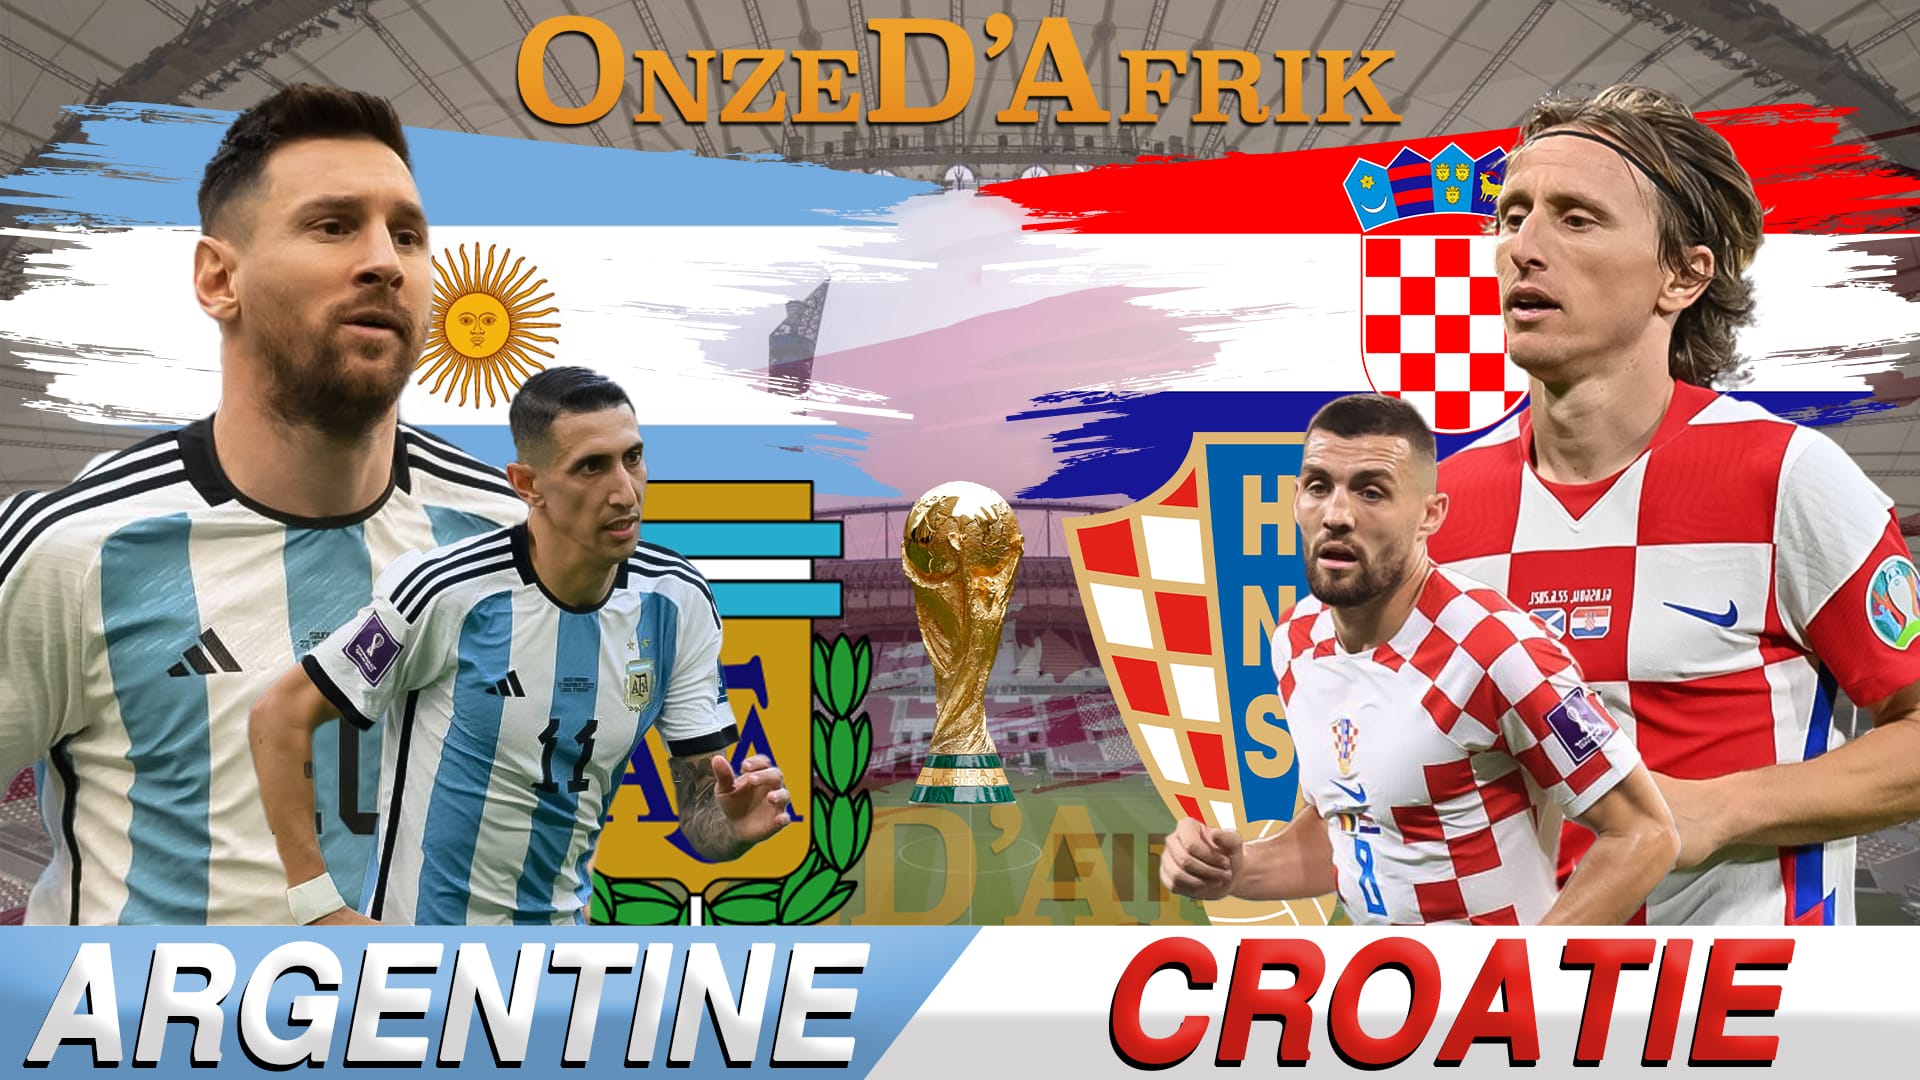 Argentine vs Croatie - OnzedAfrik